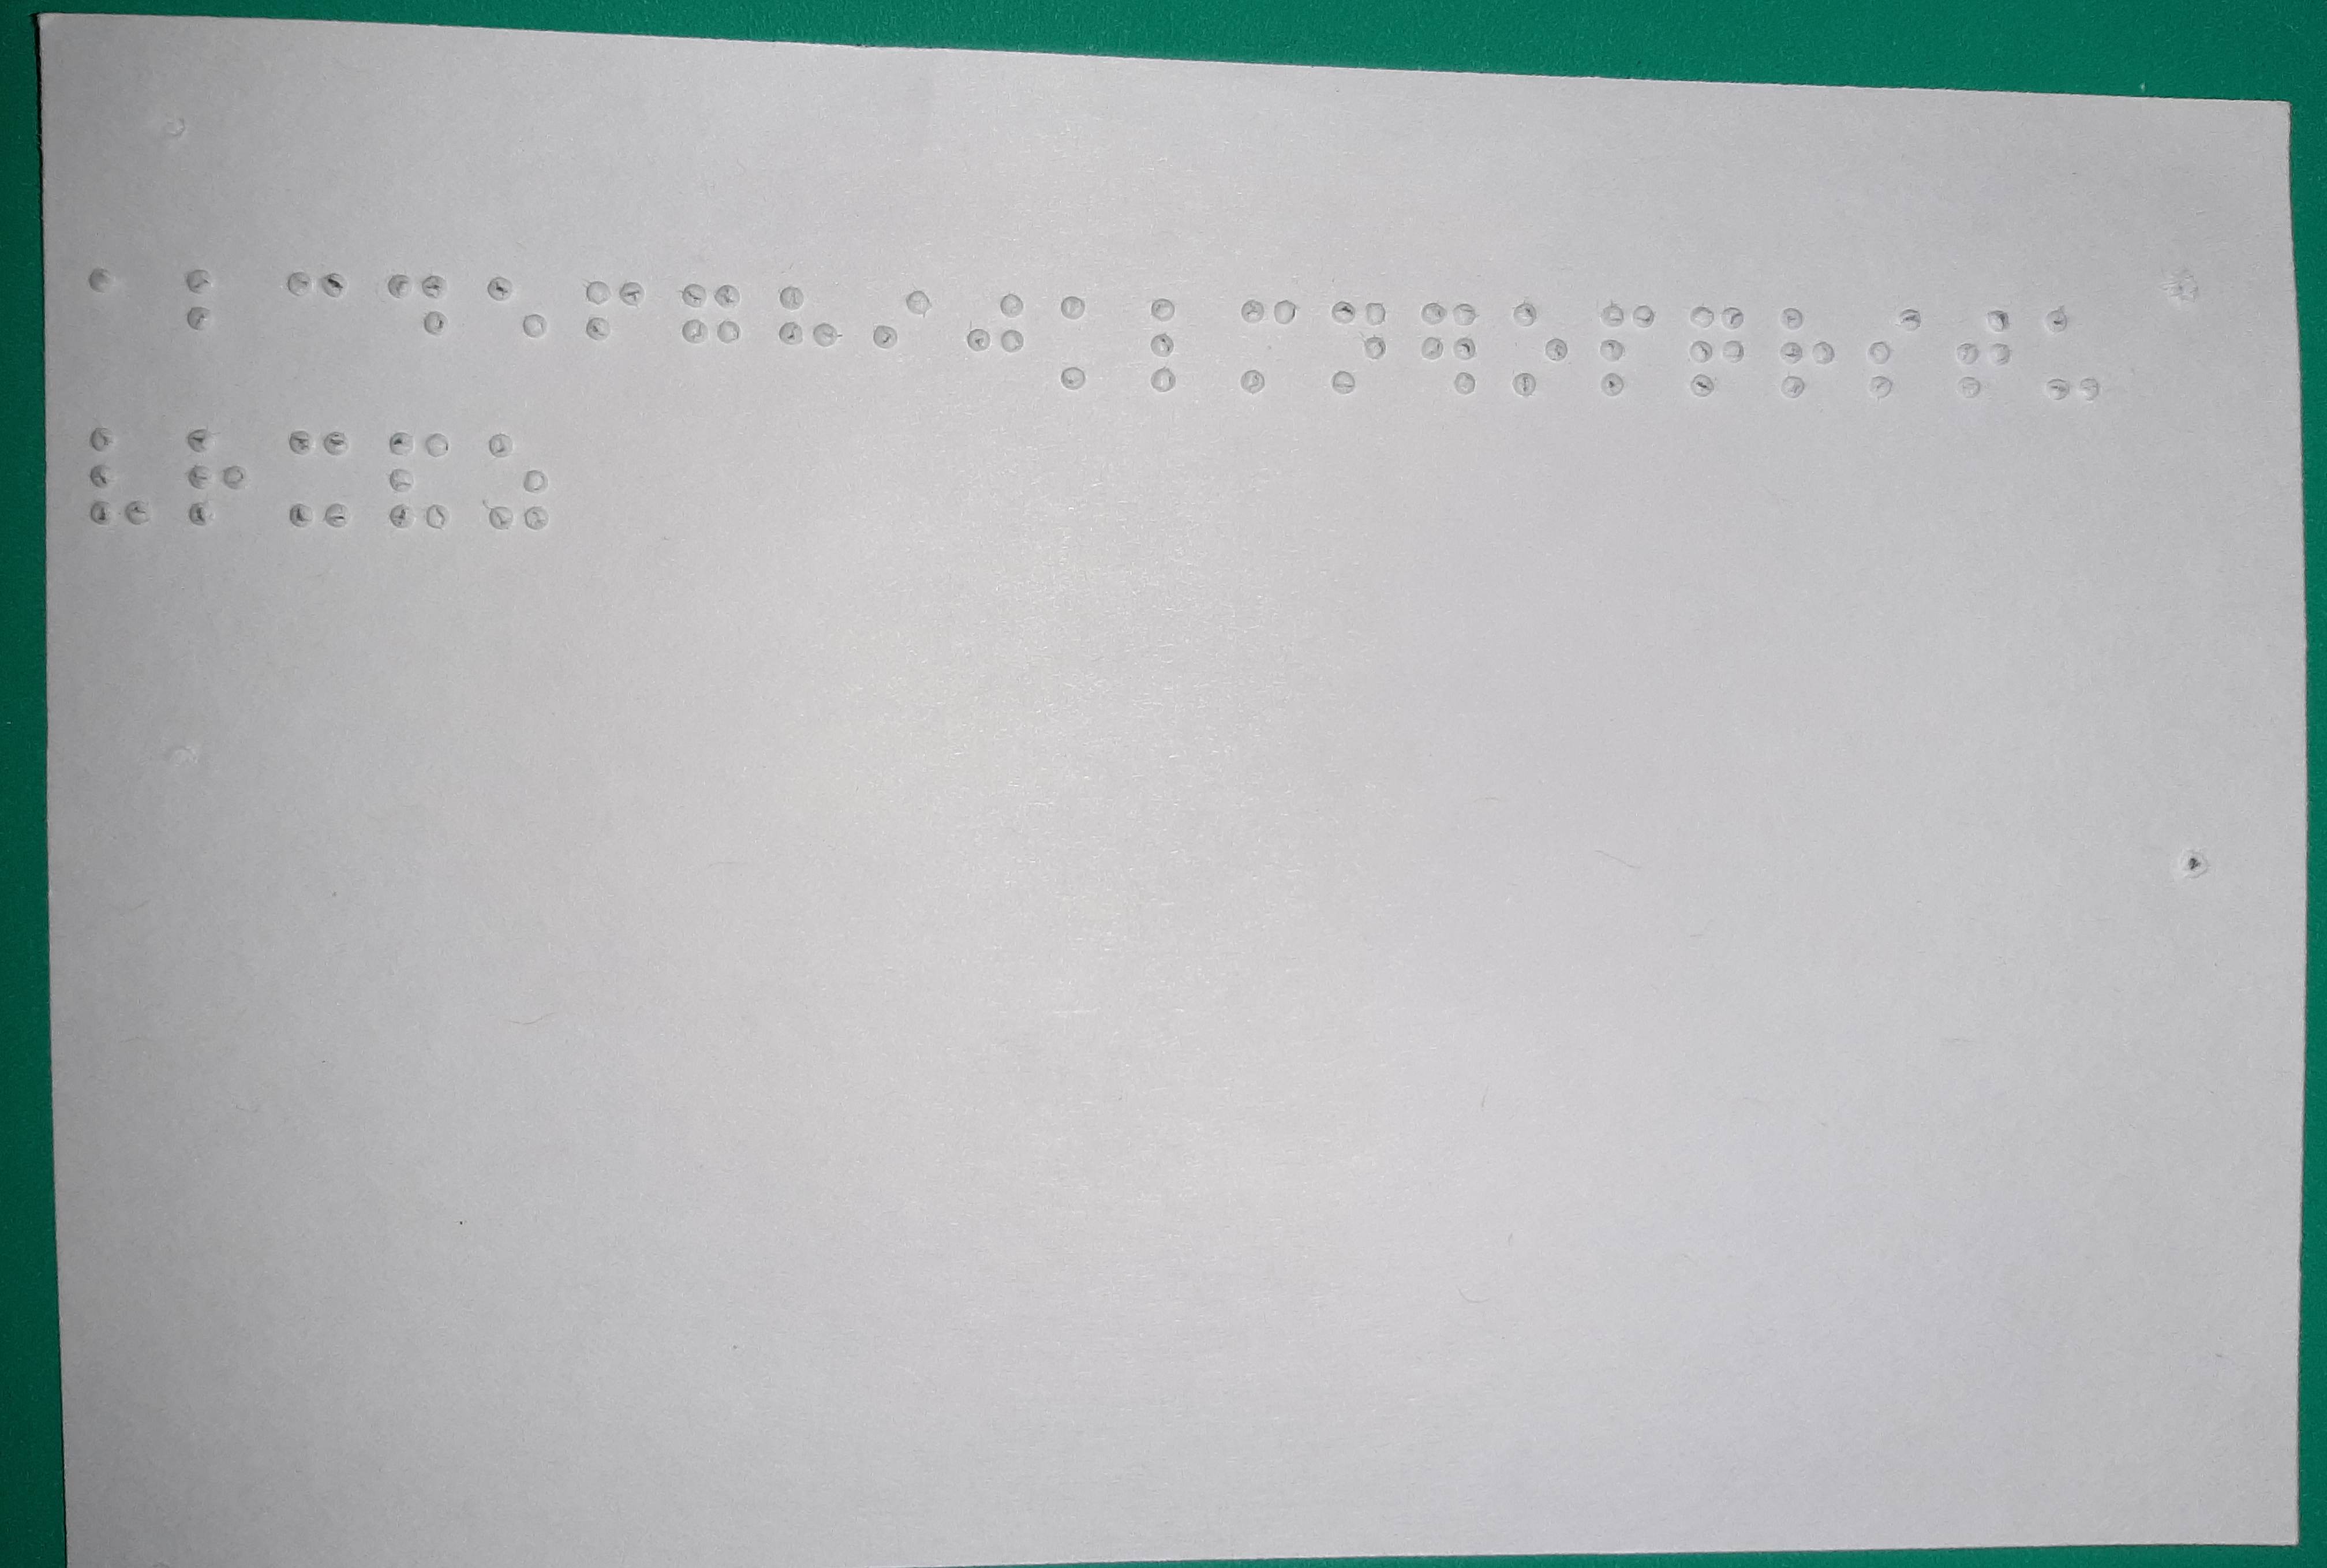 Foto de una tarjeta con el alfabeto en Braille.